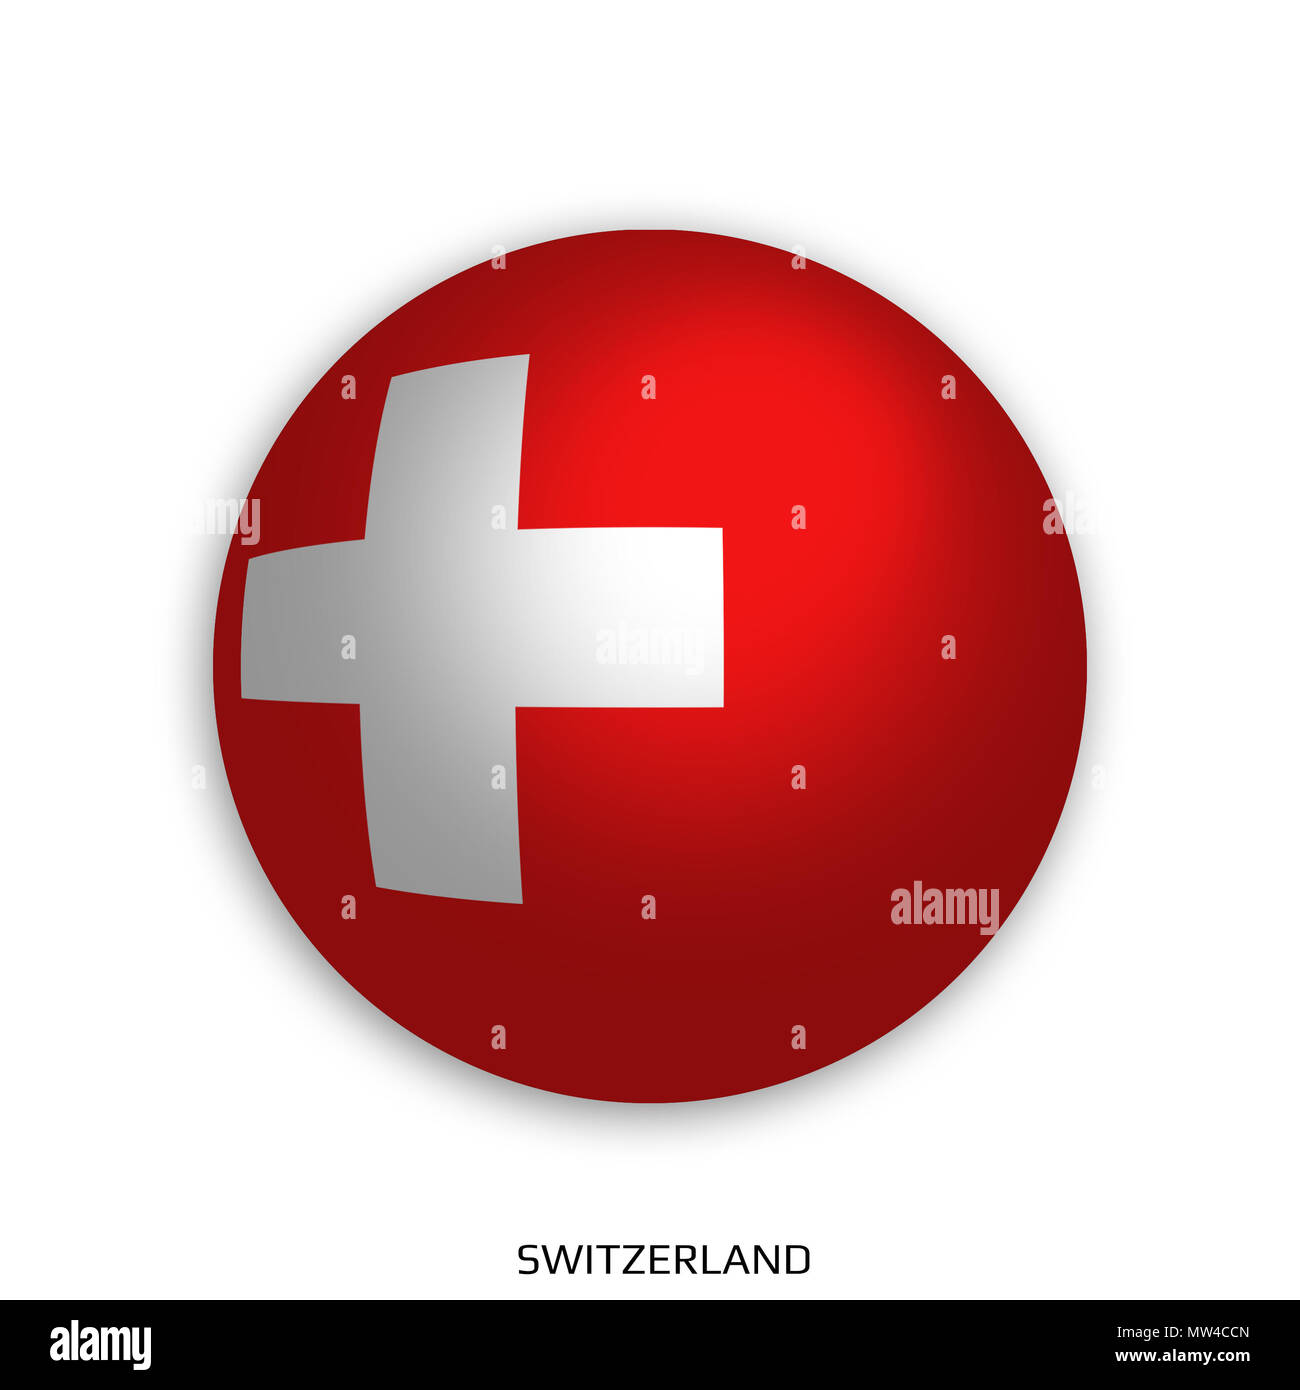 Fußball-Weltmeisterschaft mit der Schweiz Flagge gemacht rund wie Fußball,  Schlagschatten und isoliert auf weißem Hintergrund Stockfotografie - Alamy